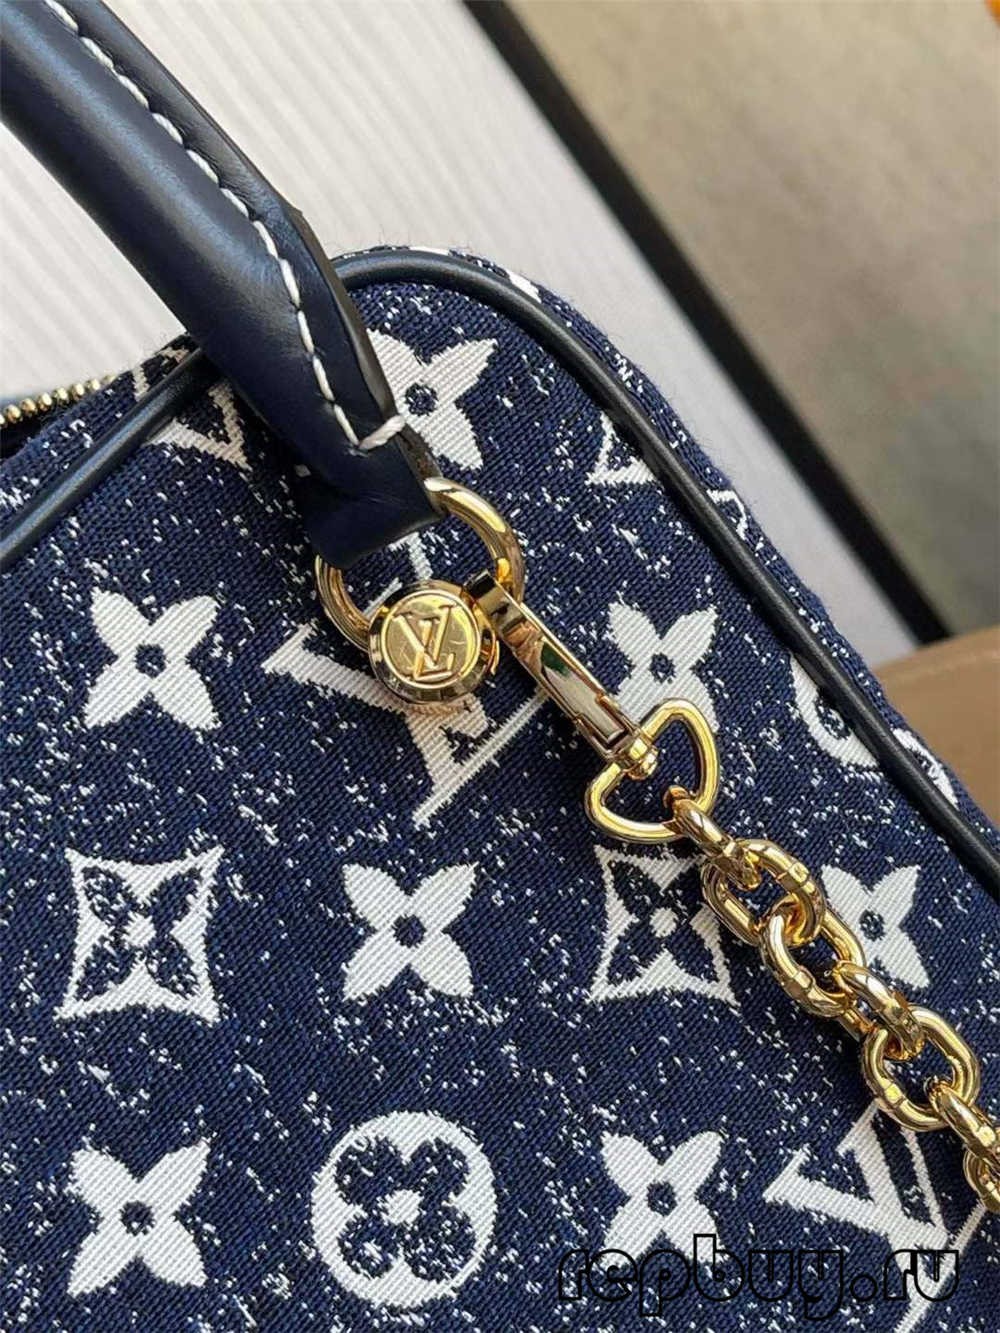 Louis Vuitton SQUARE bag M59611 بہترین کوالٹی ریپلیکا بیگ (2022 اپ ڈیٹ) - بہترین کوالٹی کا جعلی لوئس ووٹن بیگ آن لائن اسٹور، ریپلیکا ڈیزائنر بیگ آر یو